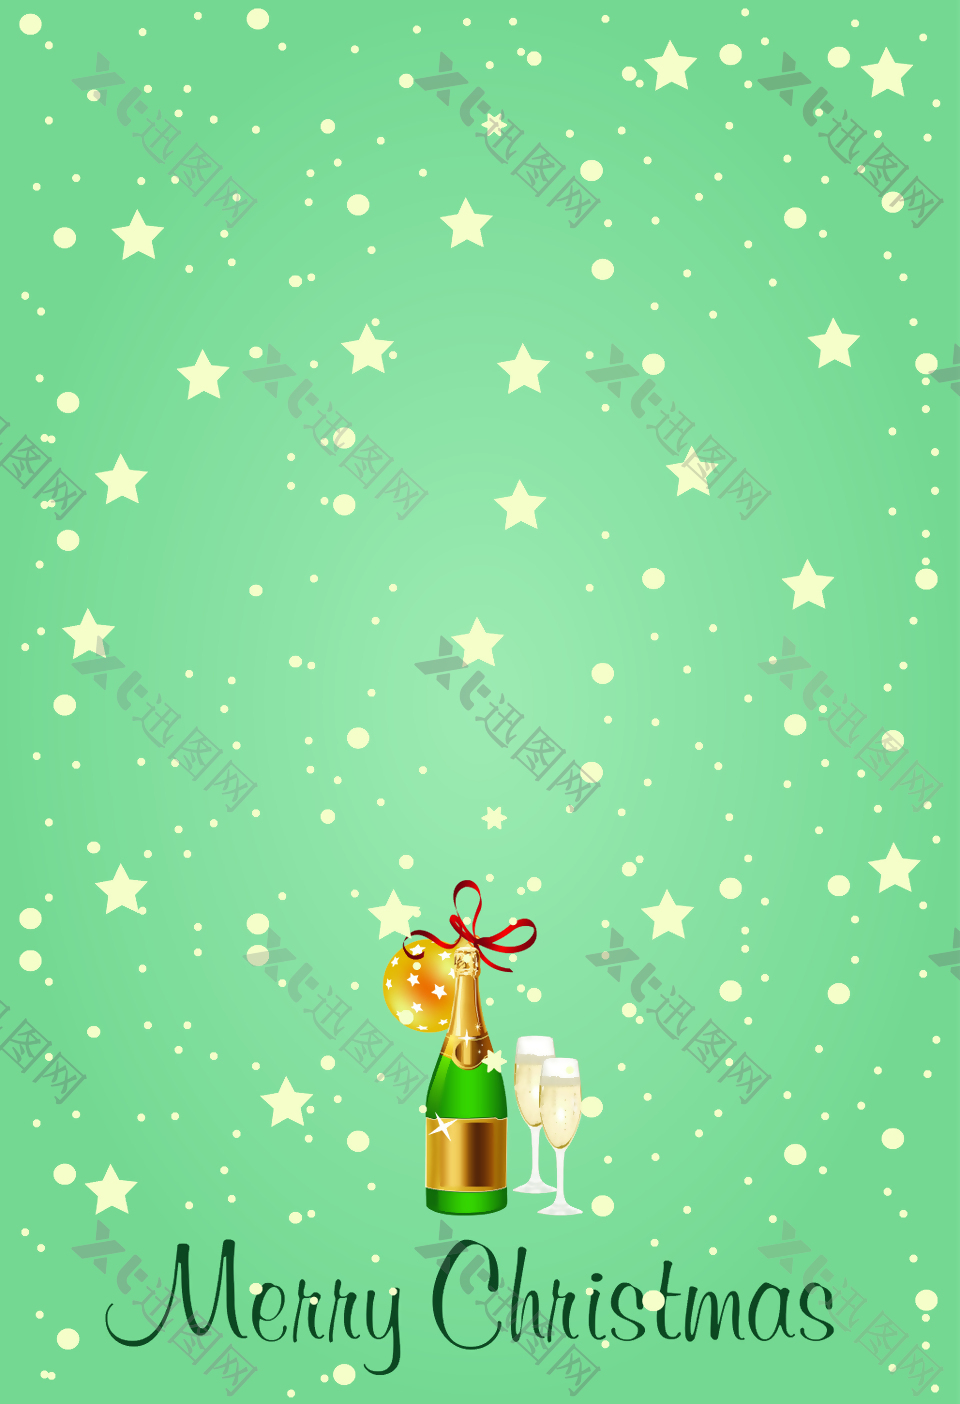 星星啤酒酒杯绿豆灰圣诞海报背景素材